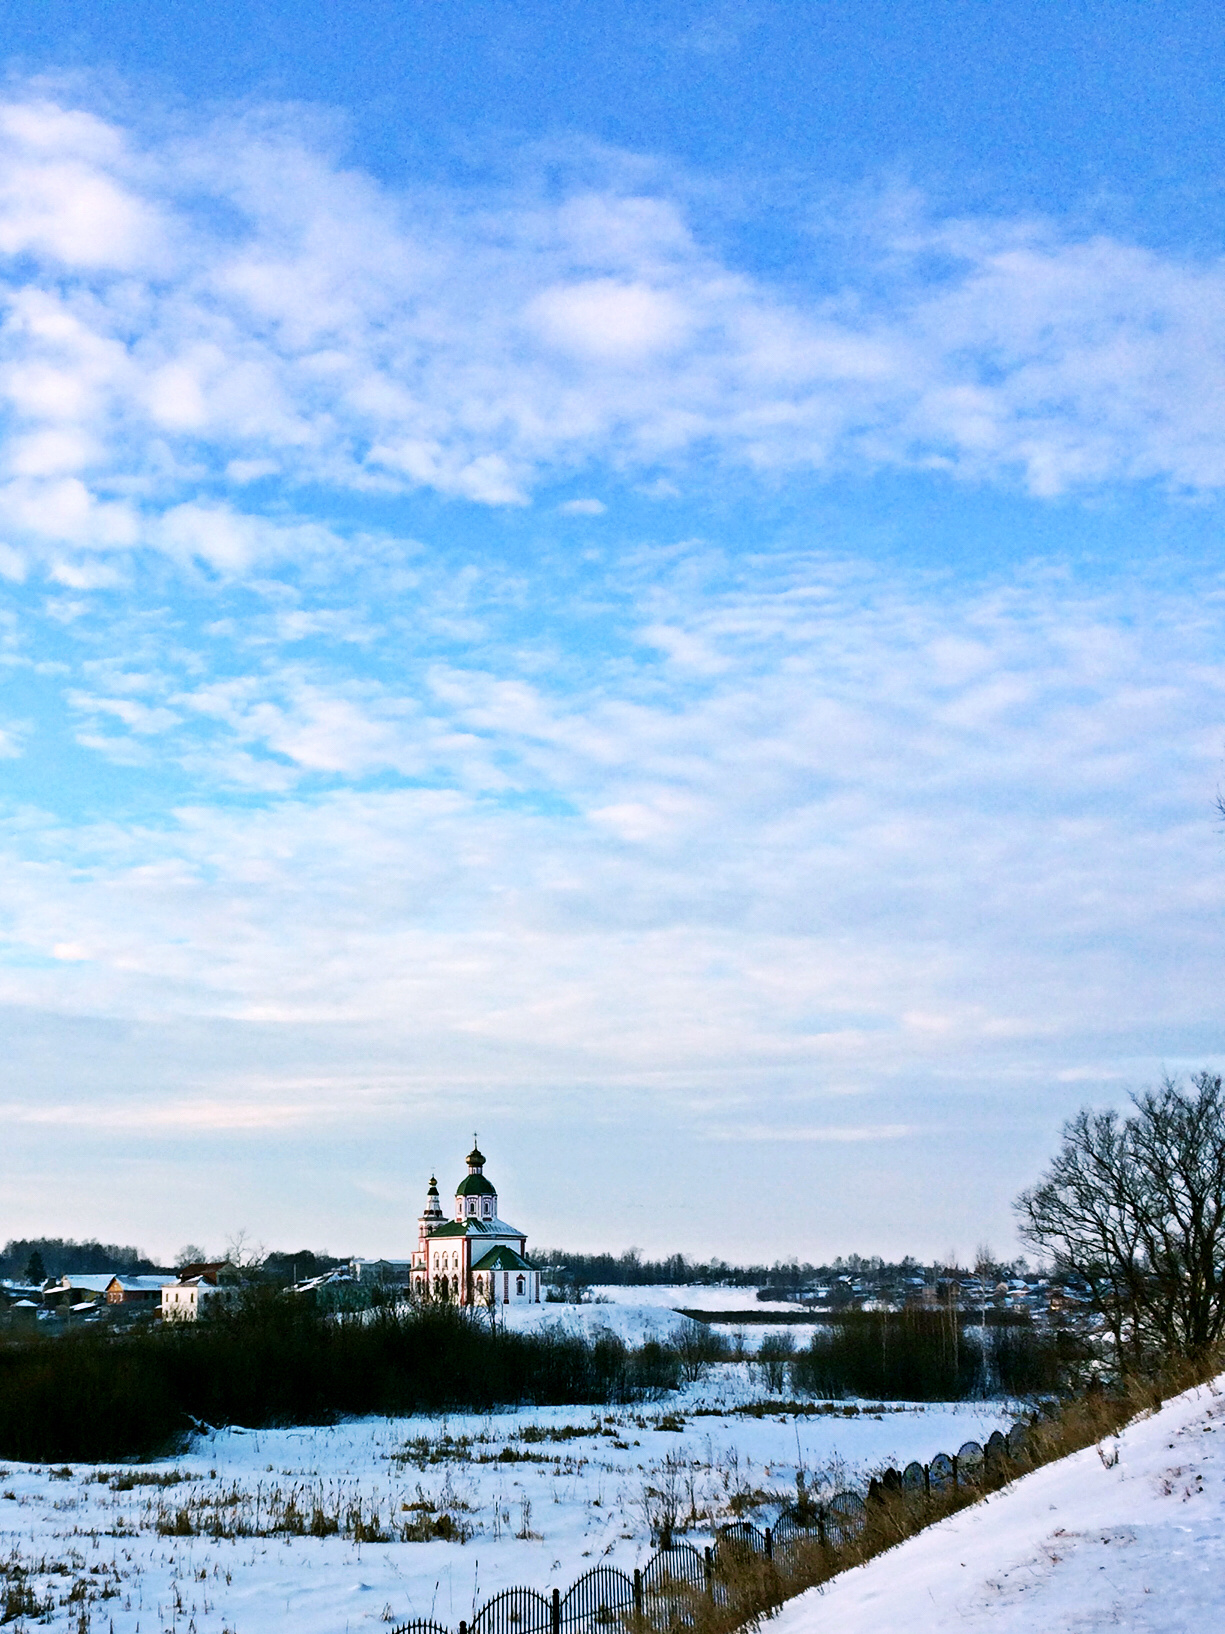 俄罗斯贝加尔湖风景壁纸高清原图下载,俄罗斯贝加尔湖风景壁纸,高清图片,壁纸,自然风景-桌面城市